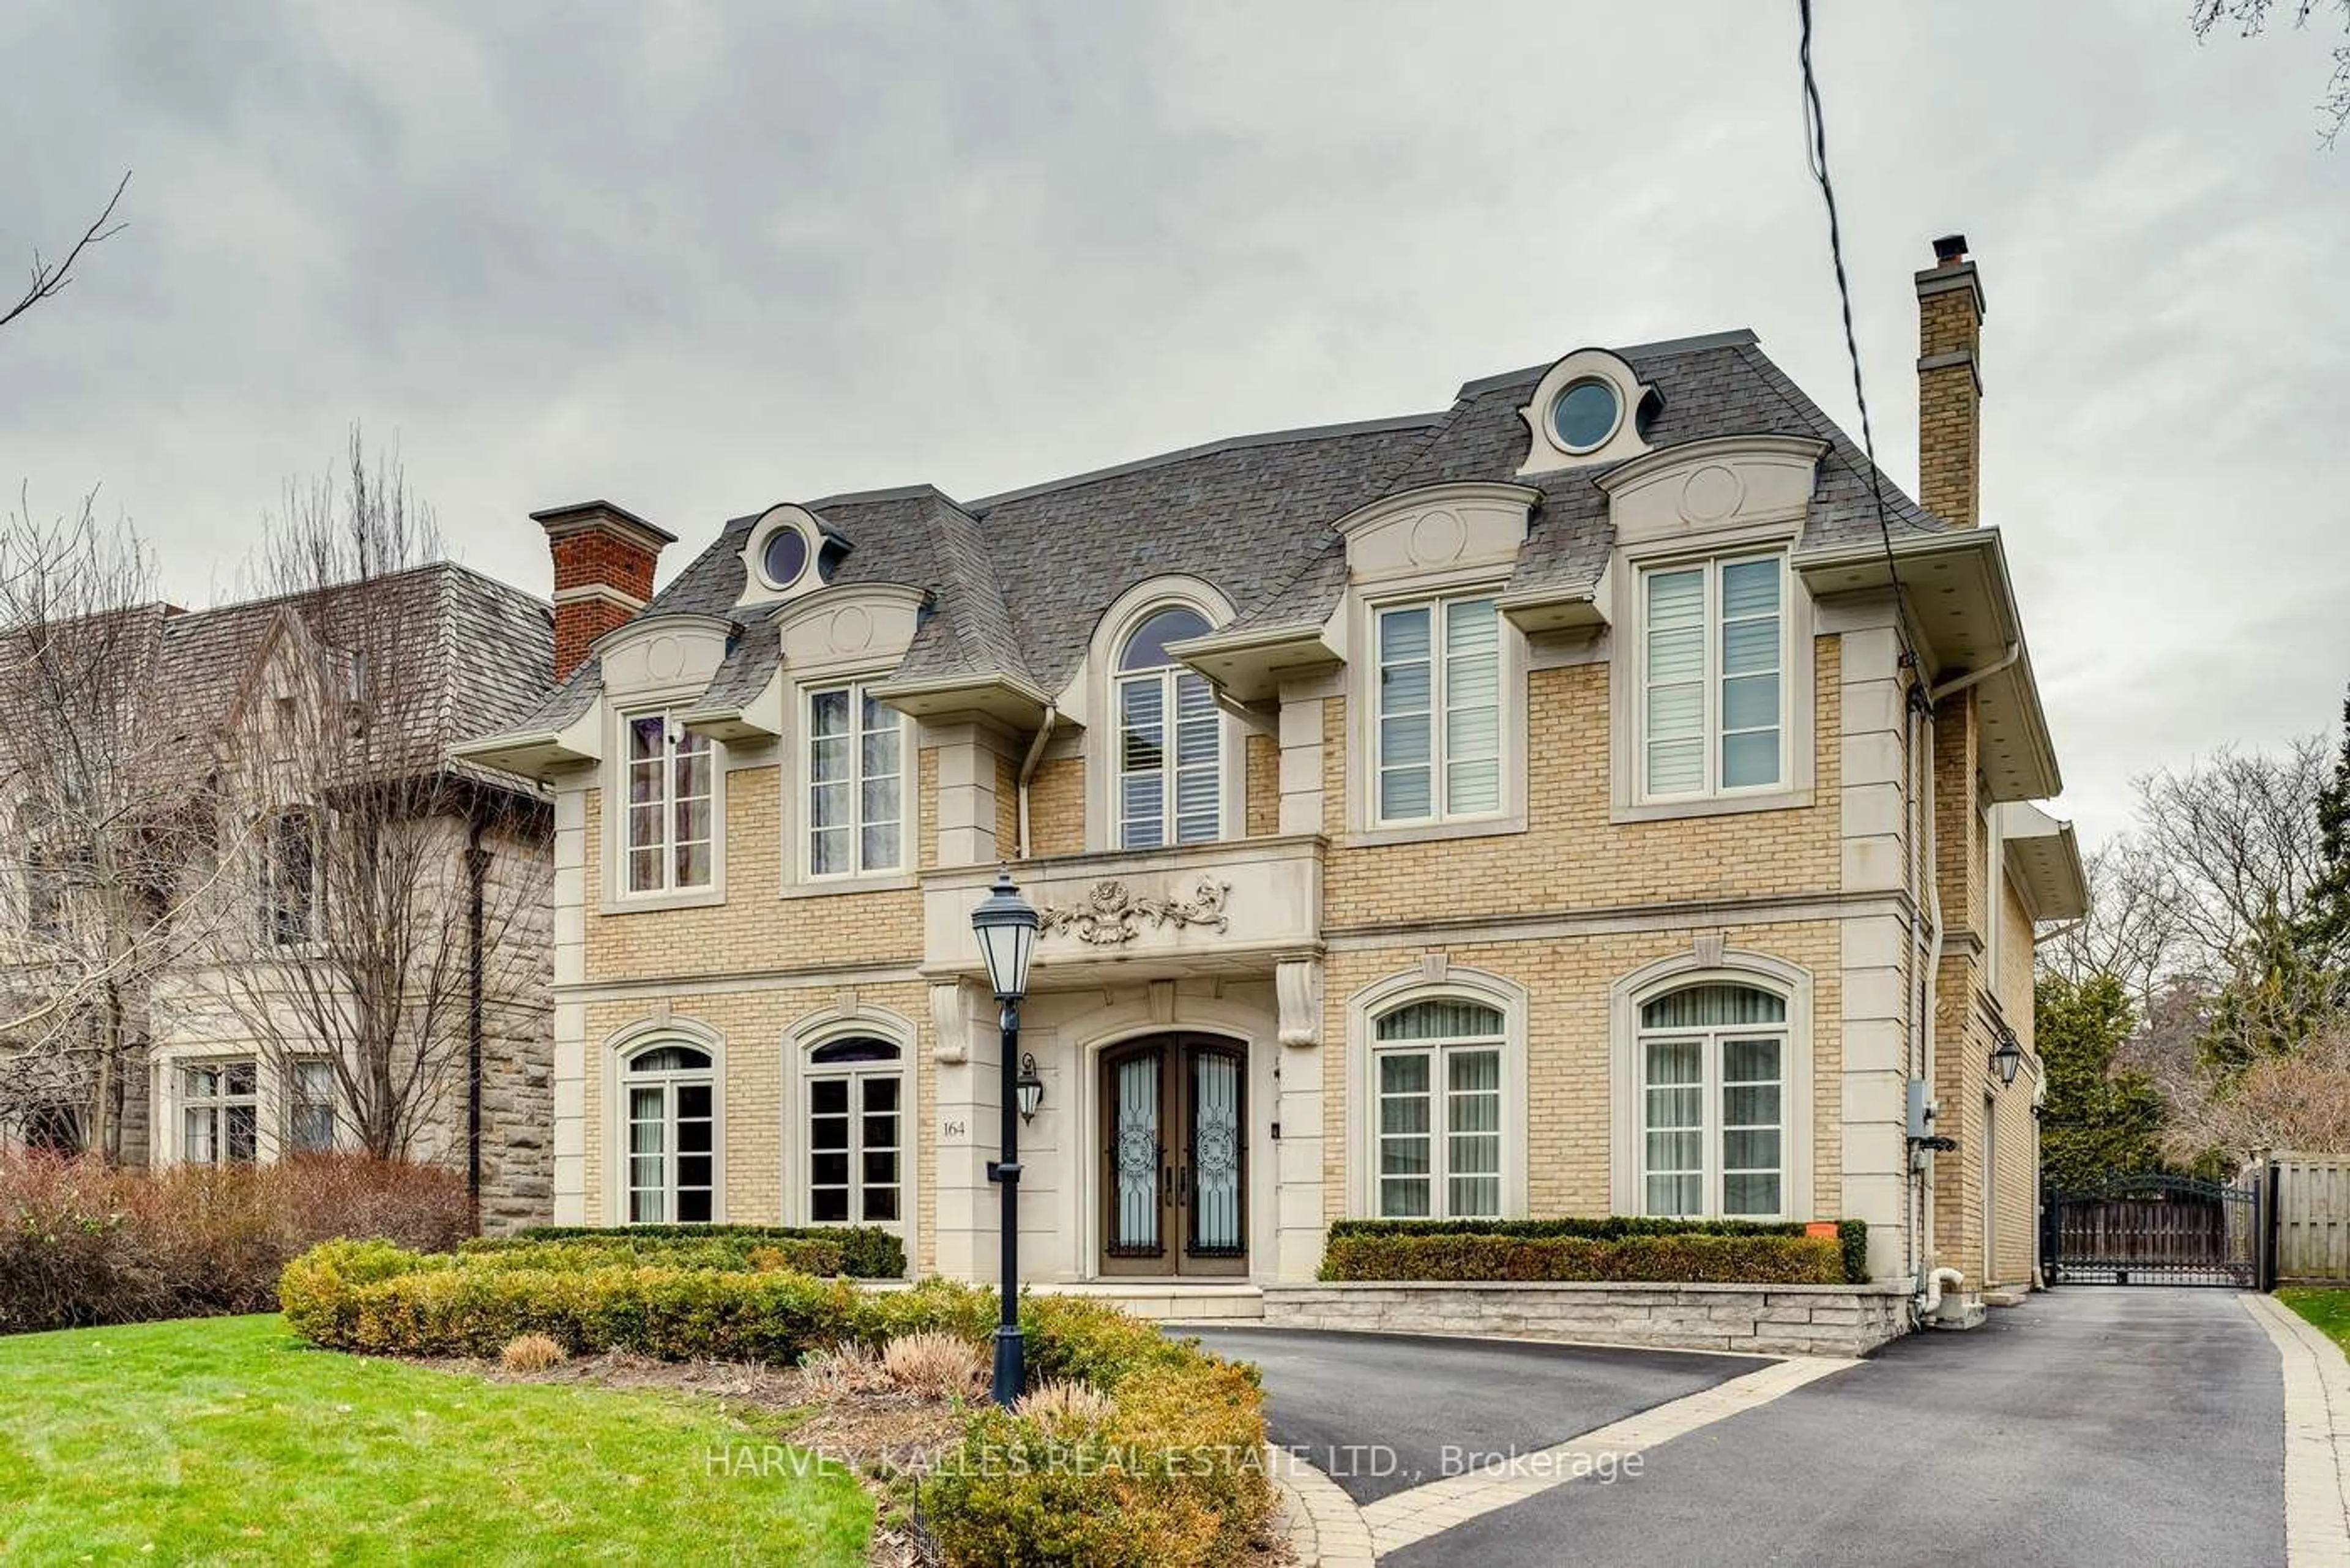 Home with brick exterior material for 164 Gordon Rd, Toronto Ontario M2P 1E8